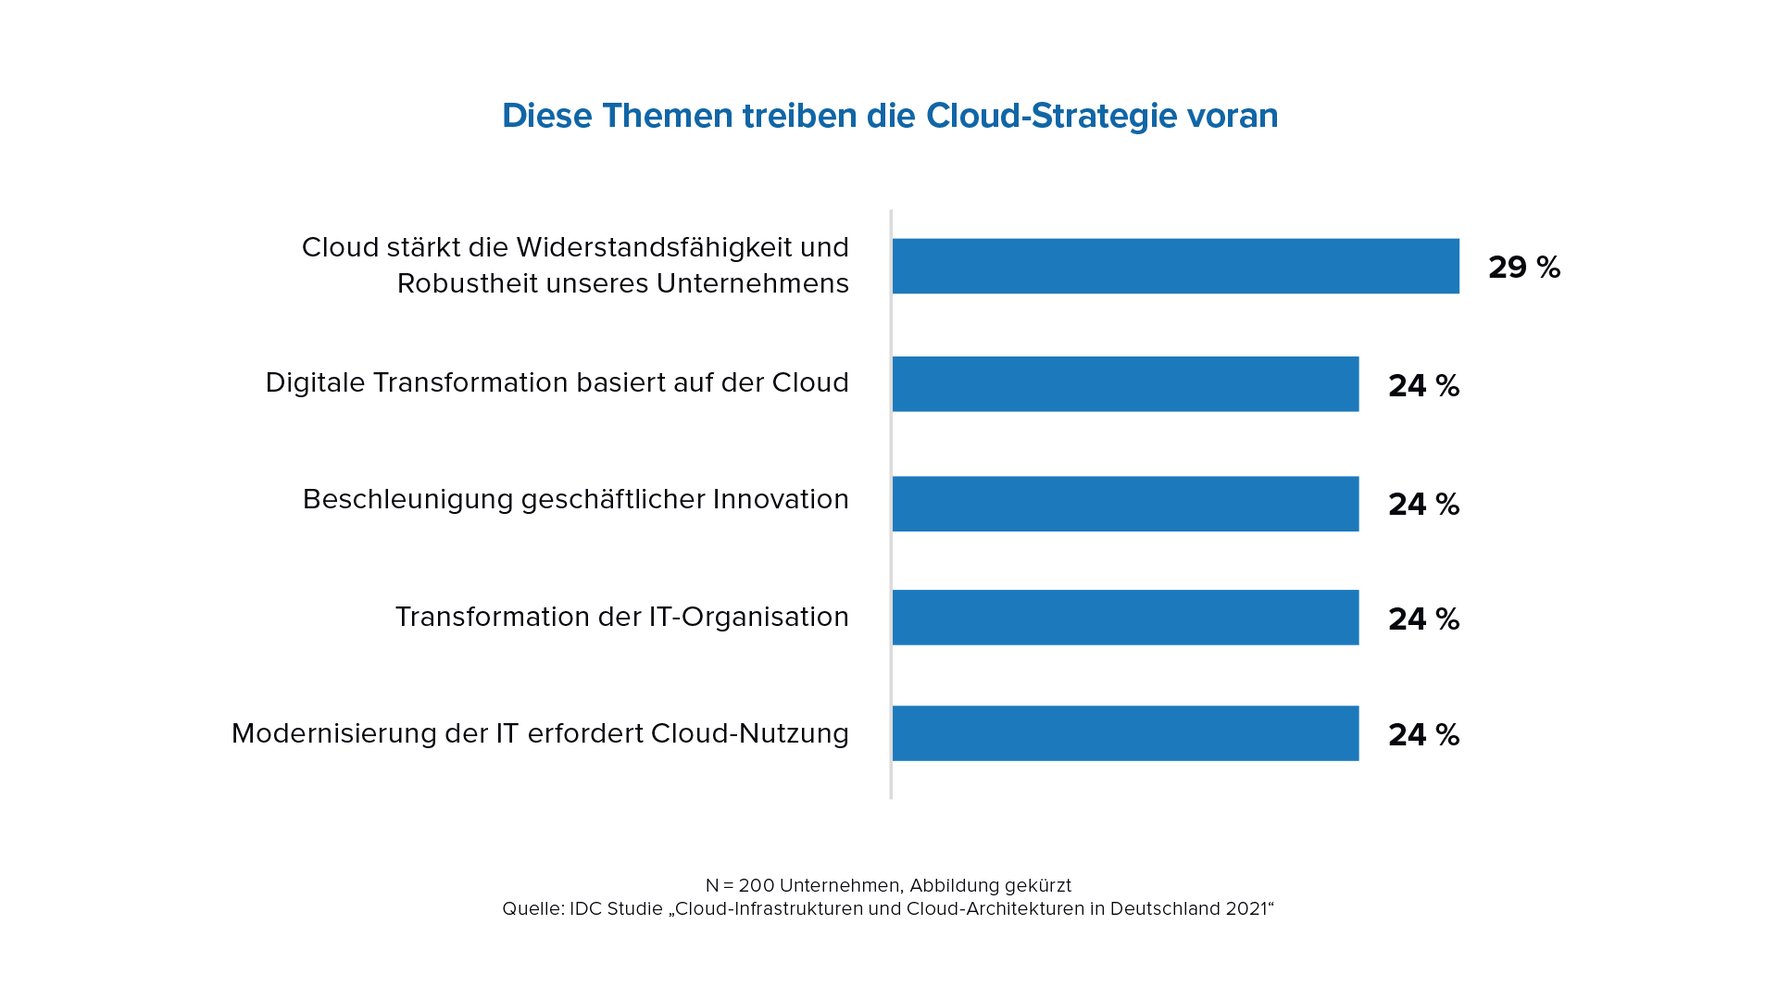 IDC MC Cloud in Deutschland Abbildungen 2021 für USU Abb1